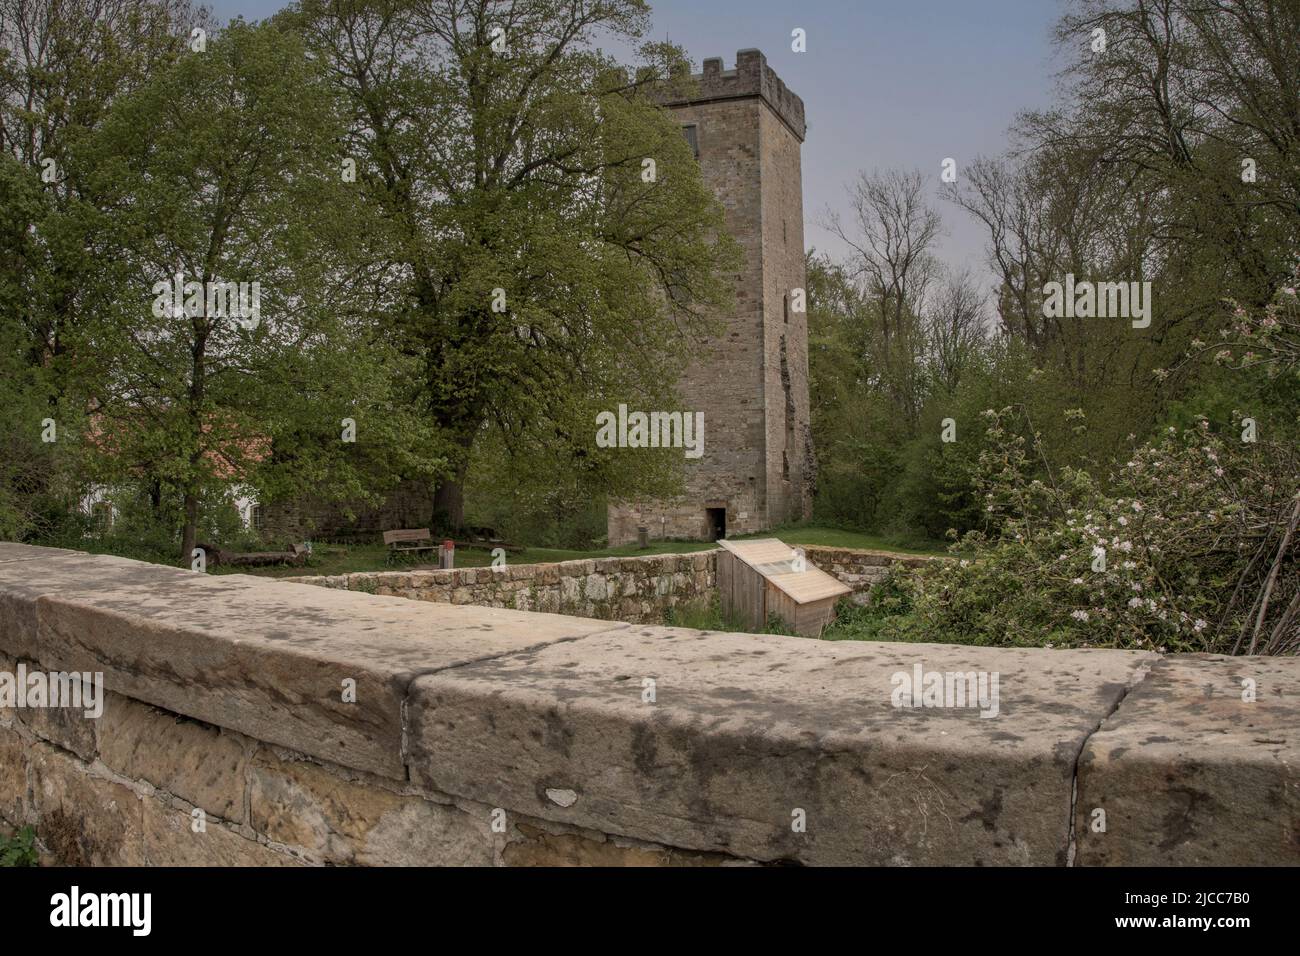 Der Burgturm ist bis heute begeh bar, hier ein Blick auf die alten Mauern mit dem Turm und die schöne und gepflegte Anlage Stock Photo